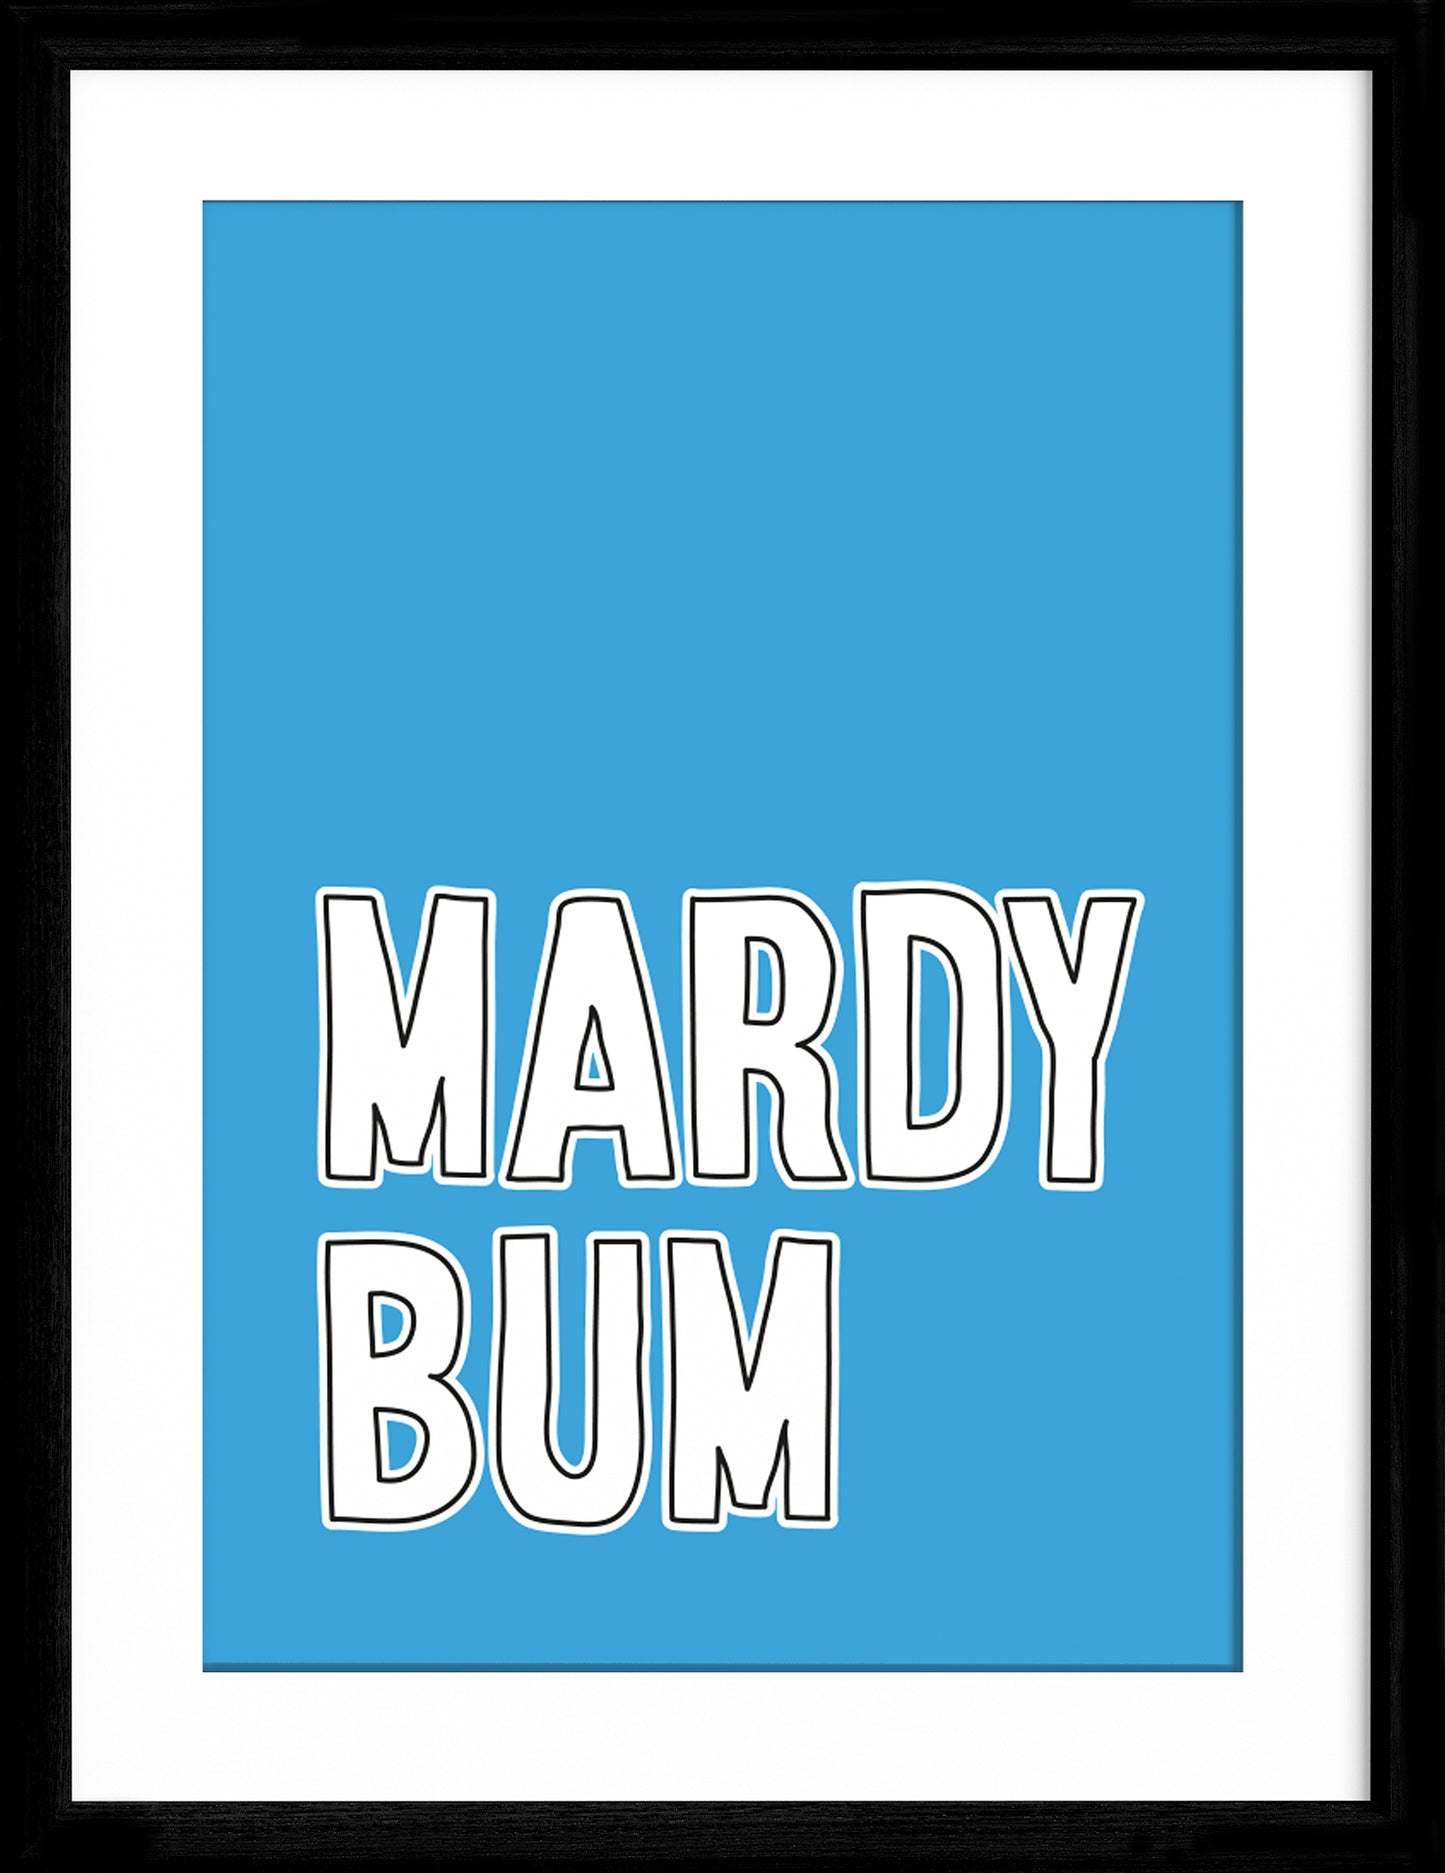 Mardy Bum